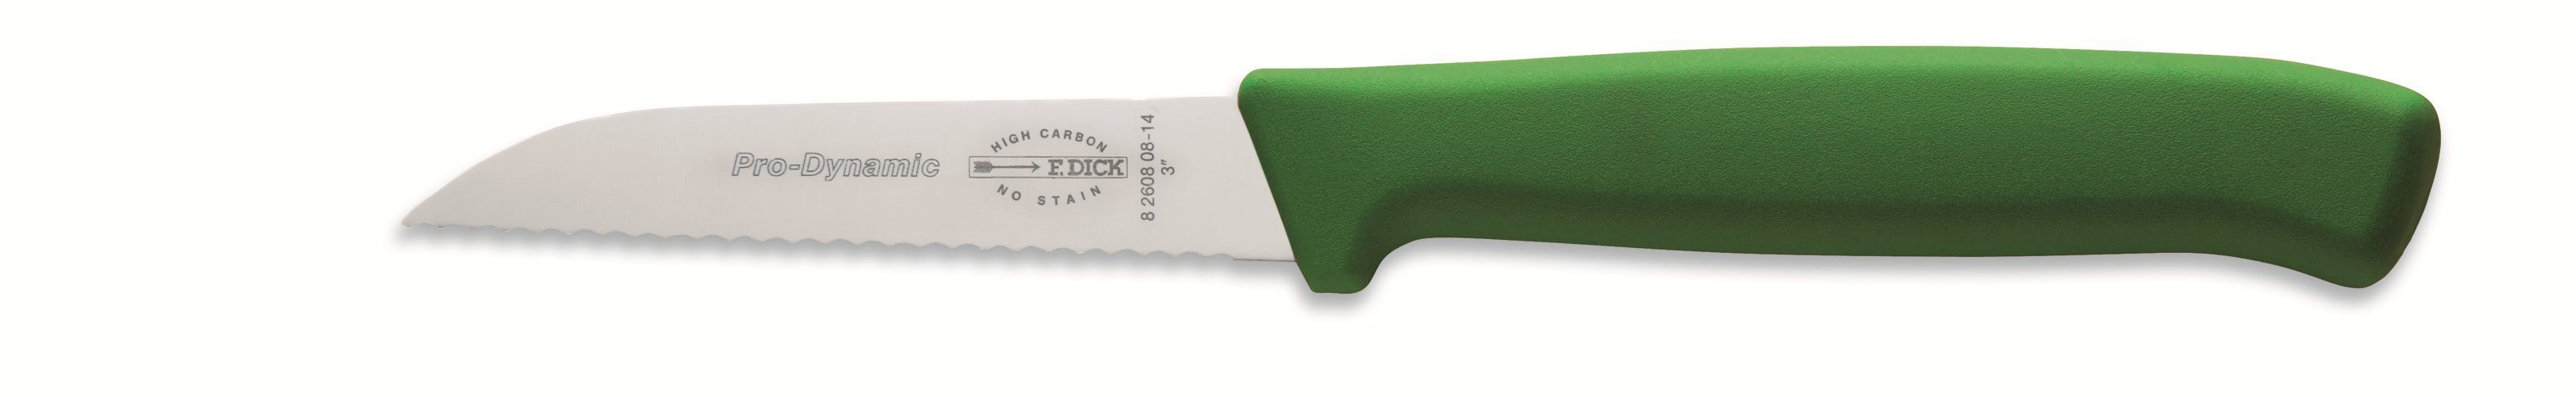 Universalküchenmesser Küchenmesser, 8cm, DICK ProDynamic F. Klinge nichtrostend (Messer DICK F.